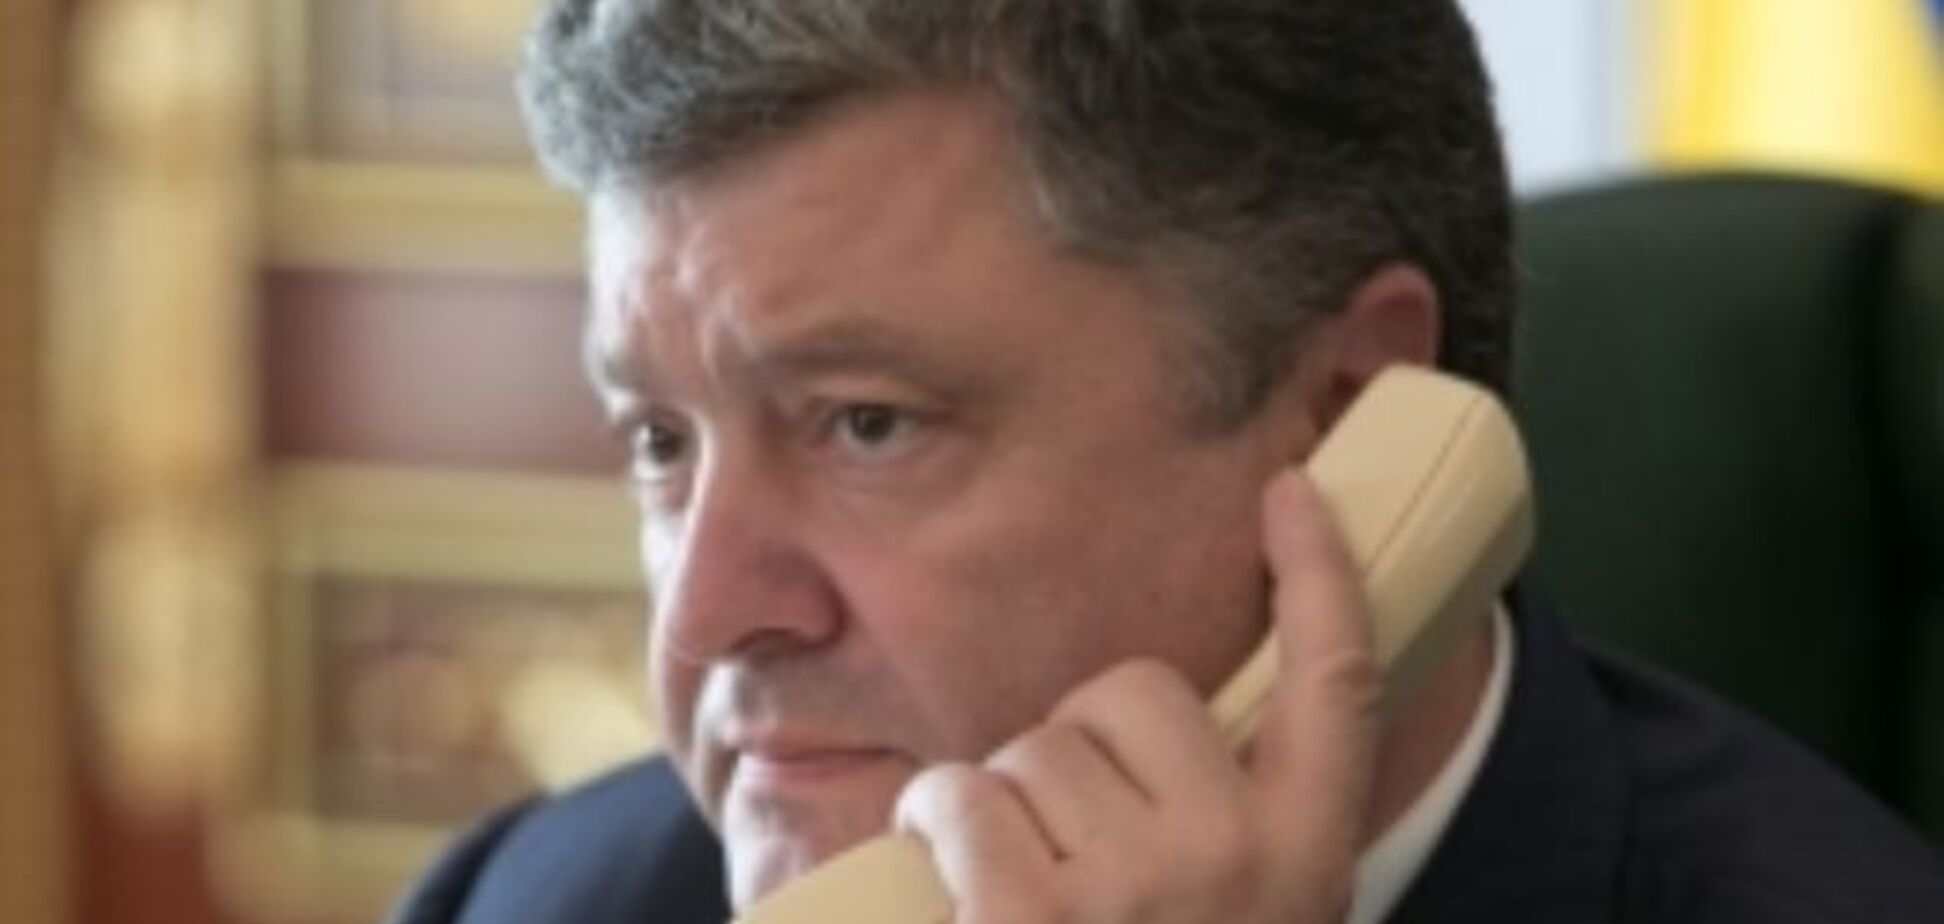 Порошенко ждет от Европы 'сильных сигналов' в поддержку Украины